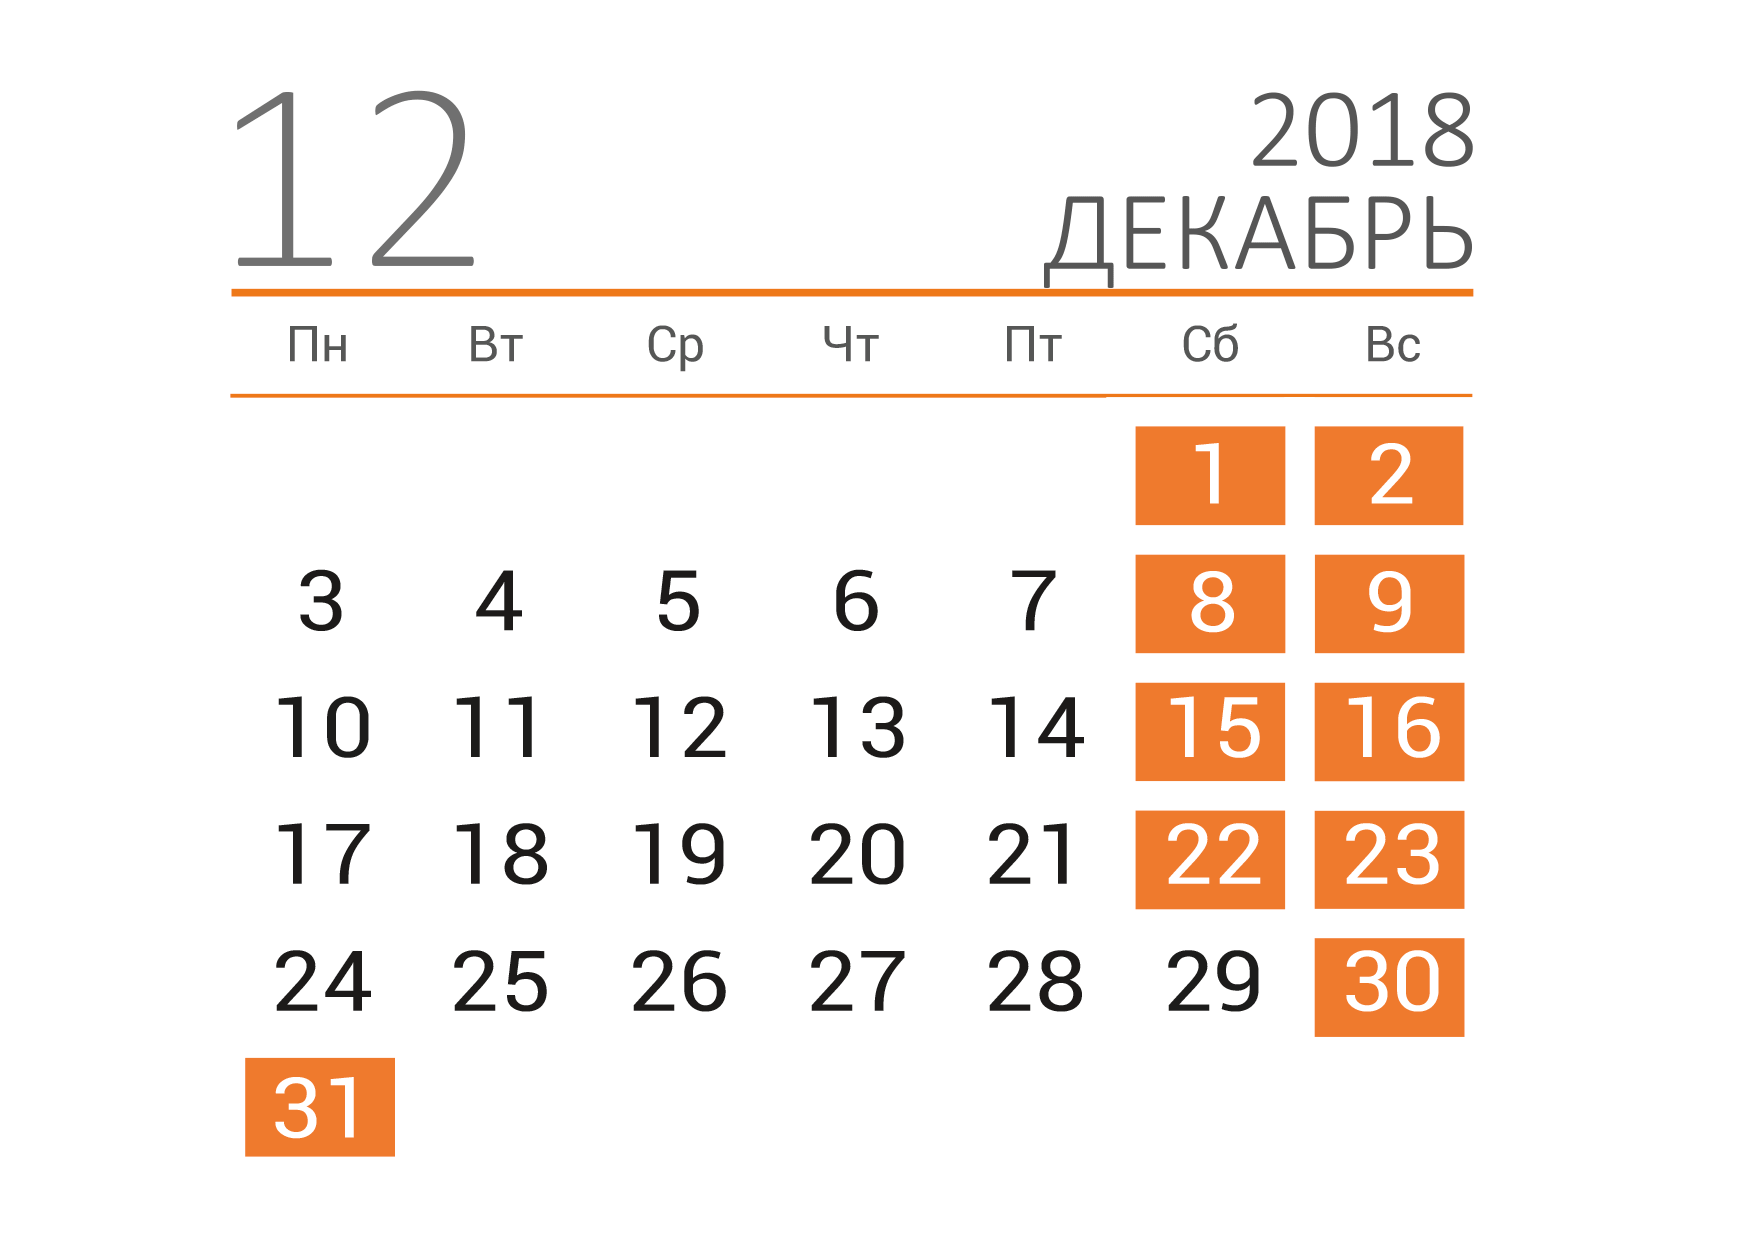 2018 13 декабрь. Календарь декабрь. Декабрь 2018 года календарь. Календарь на декабрь месяц. Календарь декабрь 2018г.